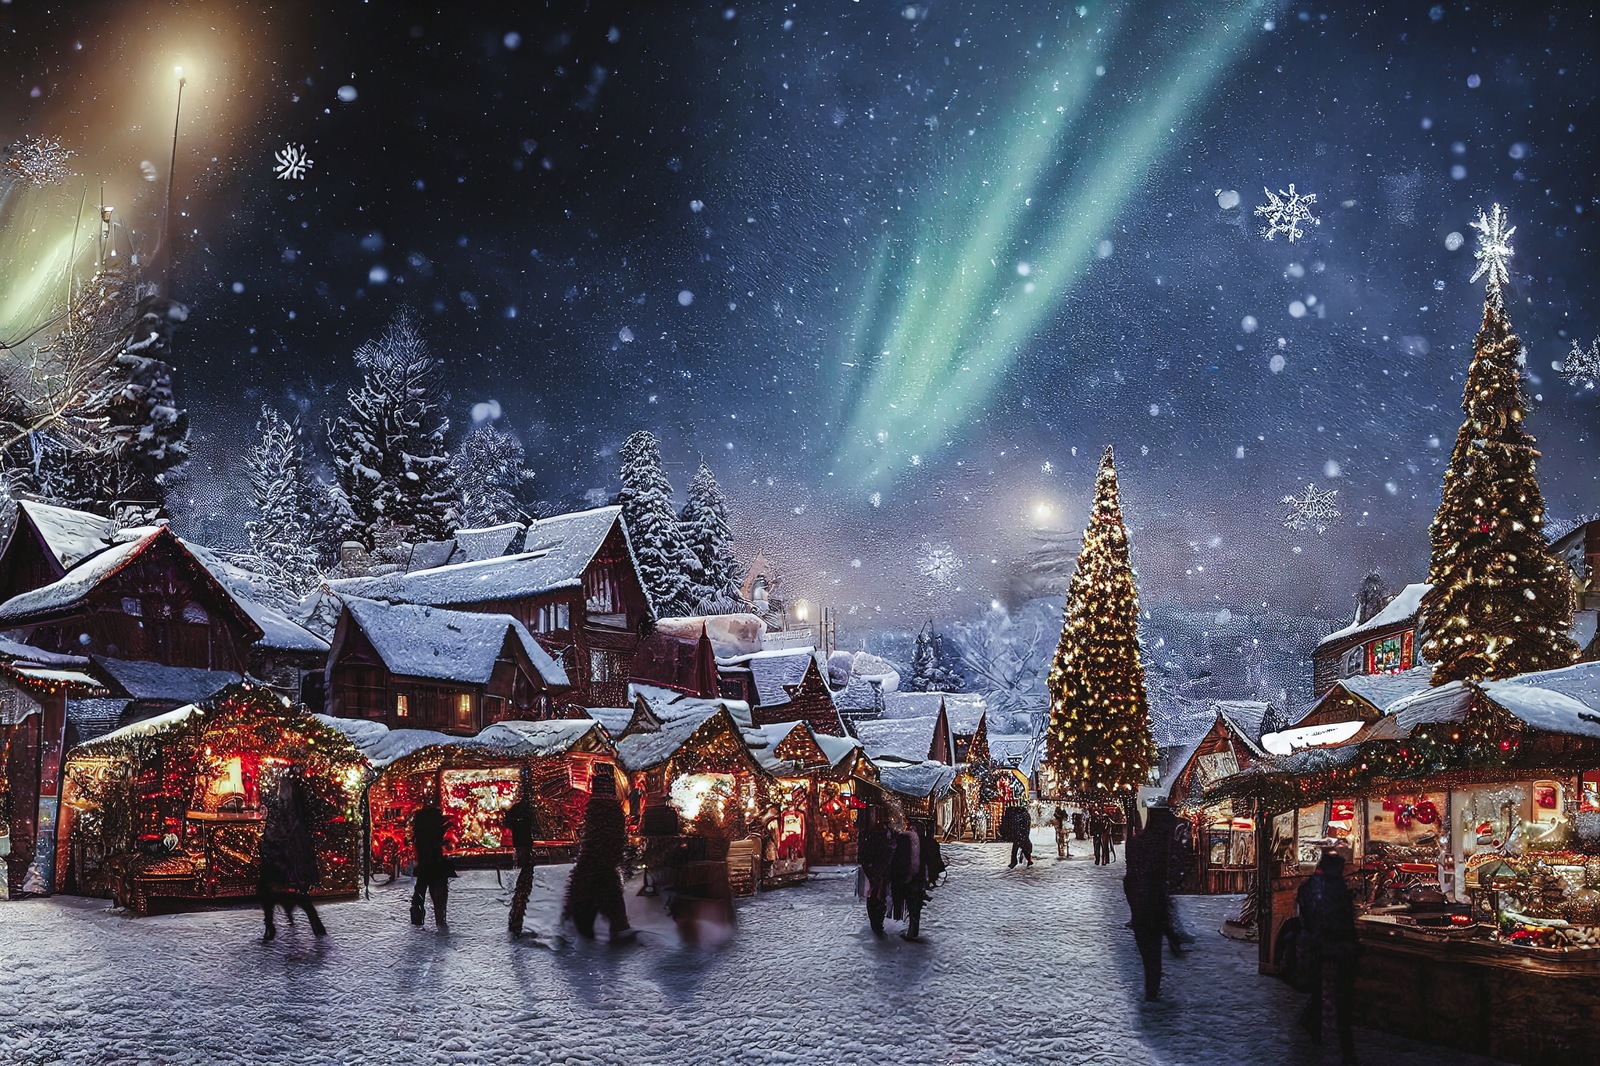 「オーロラとクリスマスムードの街並み」の写真